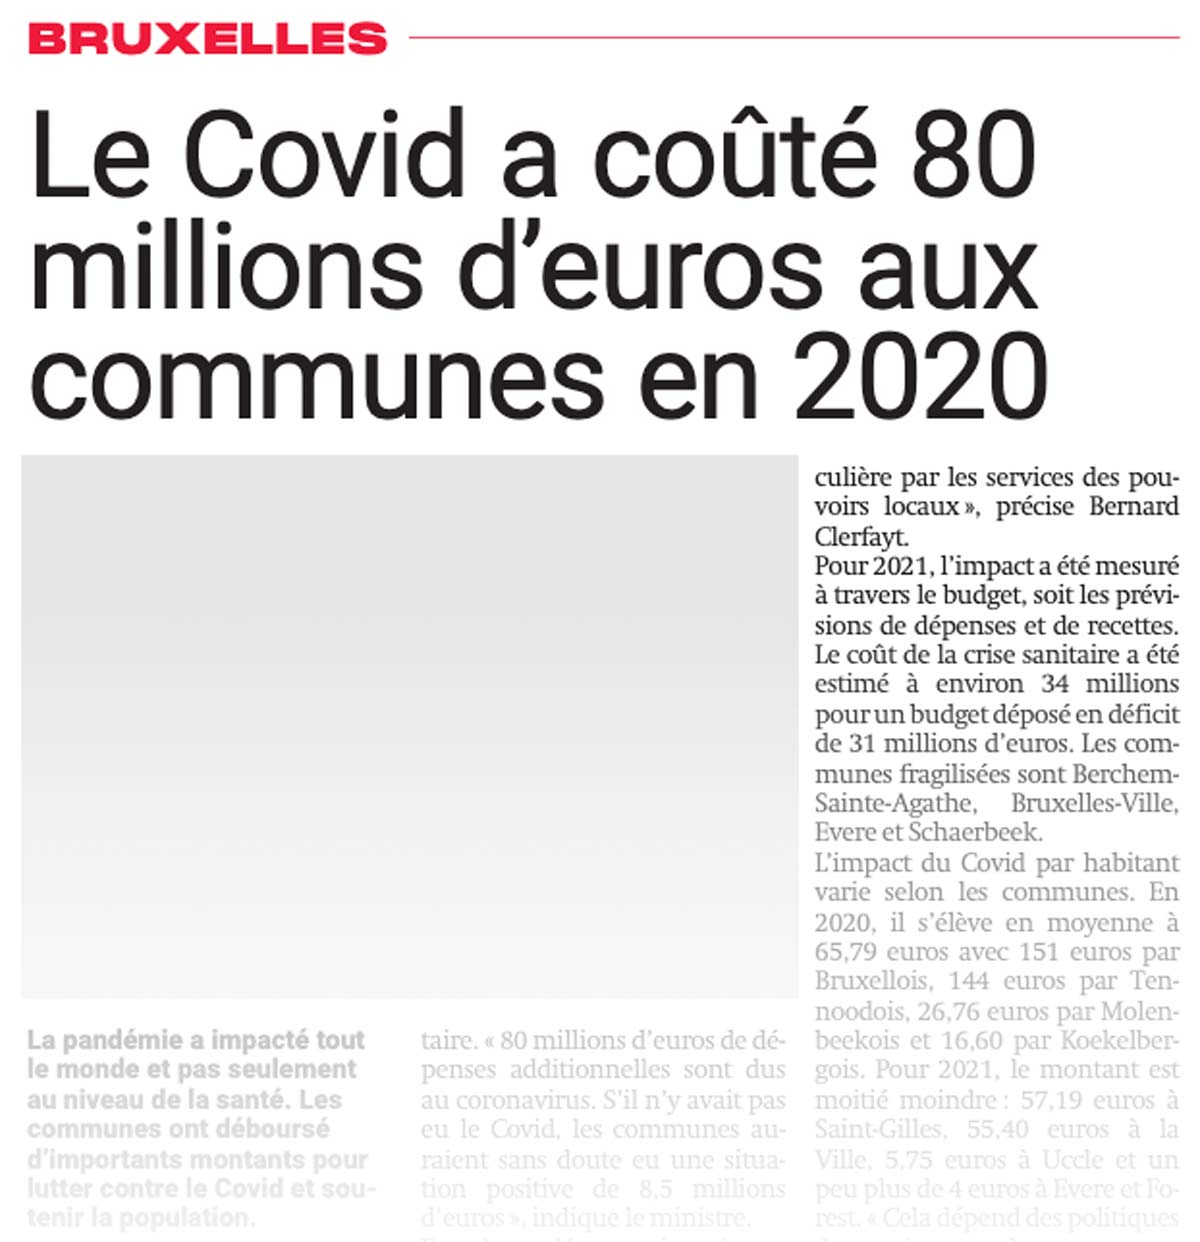 Le Covid a coûté 80 millions d'euros aux communes en 2020